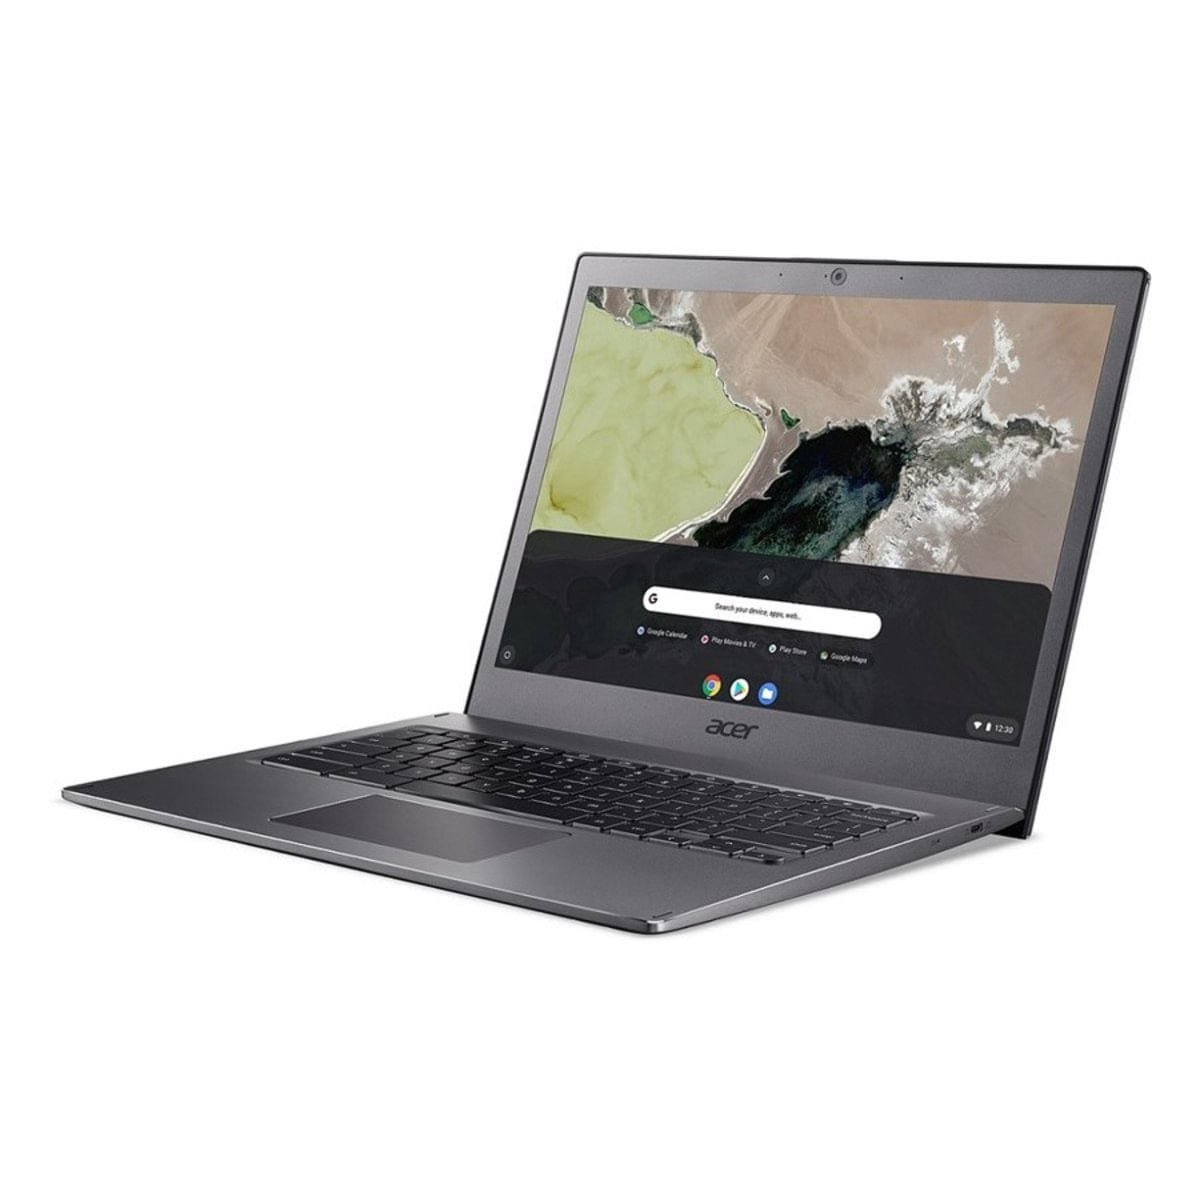 Notebook - Acer Cb713-1w-56vy I5-8250u 3.40ghz 8gb 64gb Padrão Intel Hd Graphics 520 Google Chrome os Chromebook 13,5" Polegadas